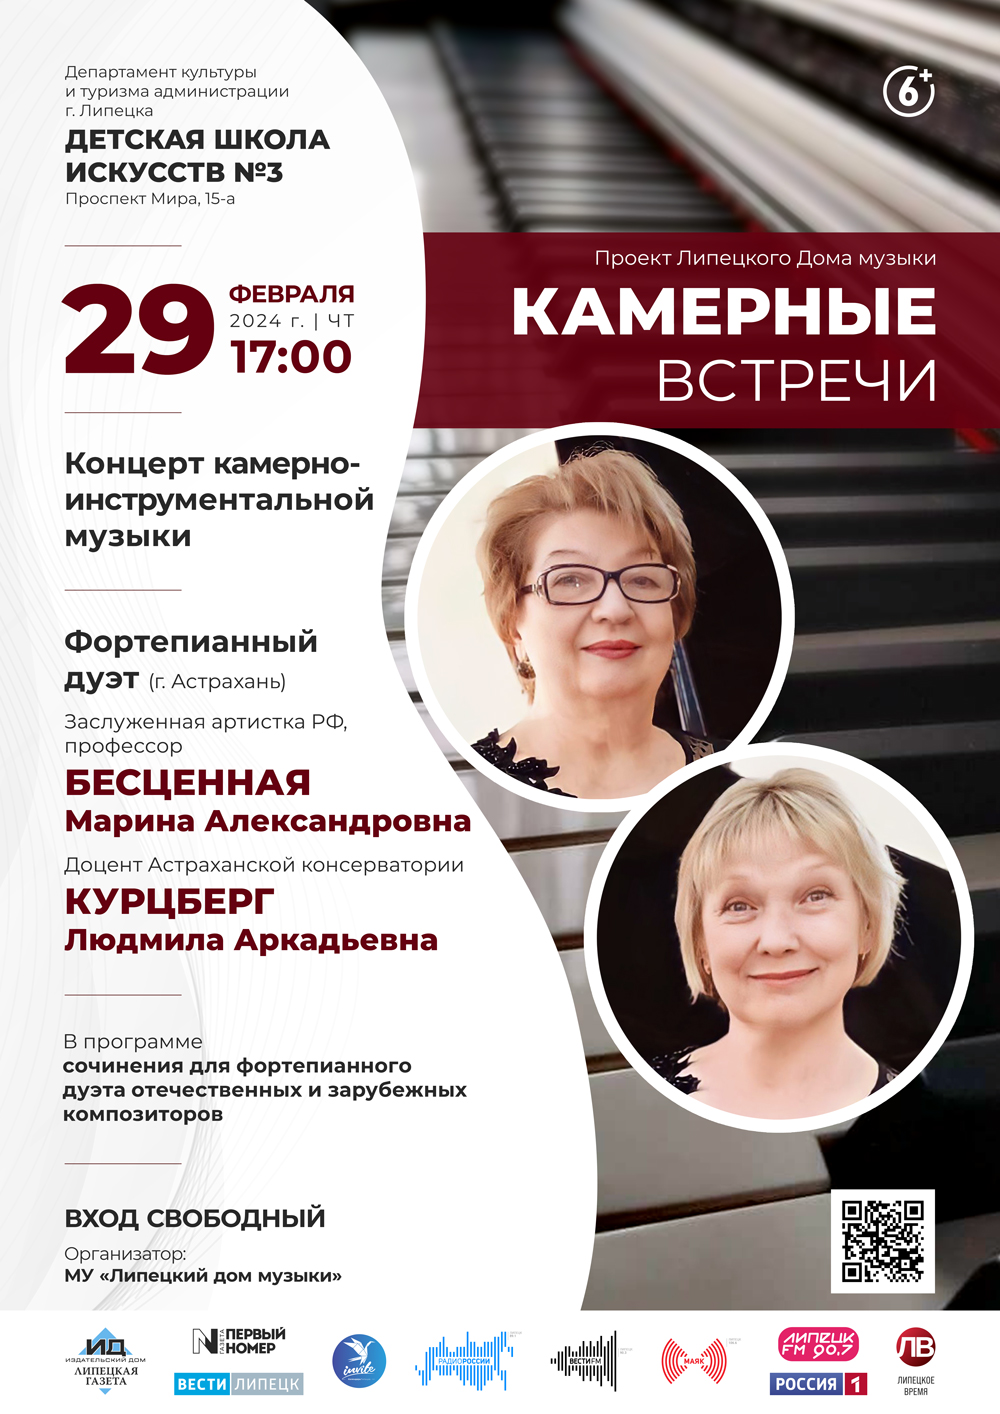 Камерные встречи: Фортепианный дуэт из г. Астрахань (ДШИ №3: 29.02.2024 в 17:00)